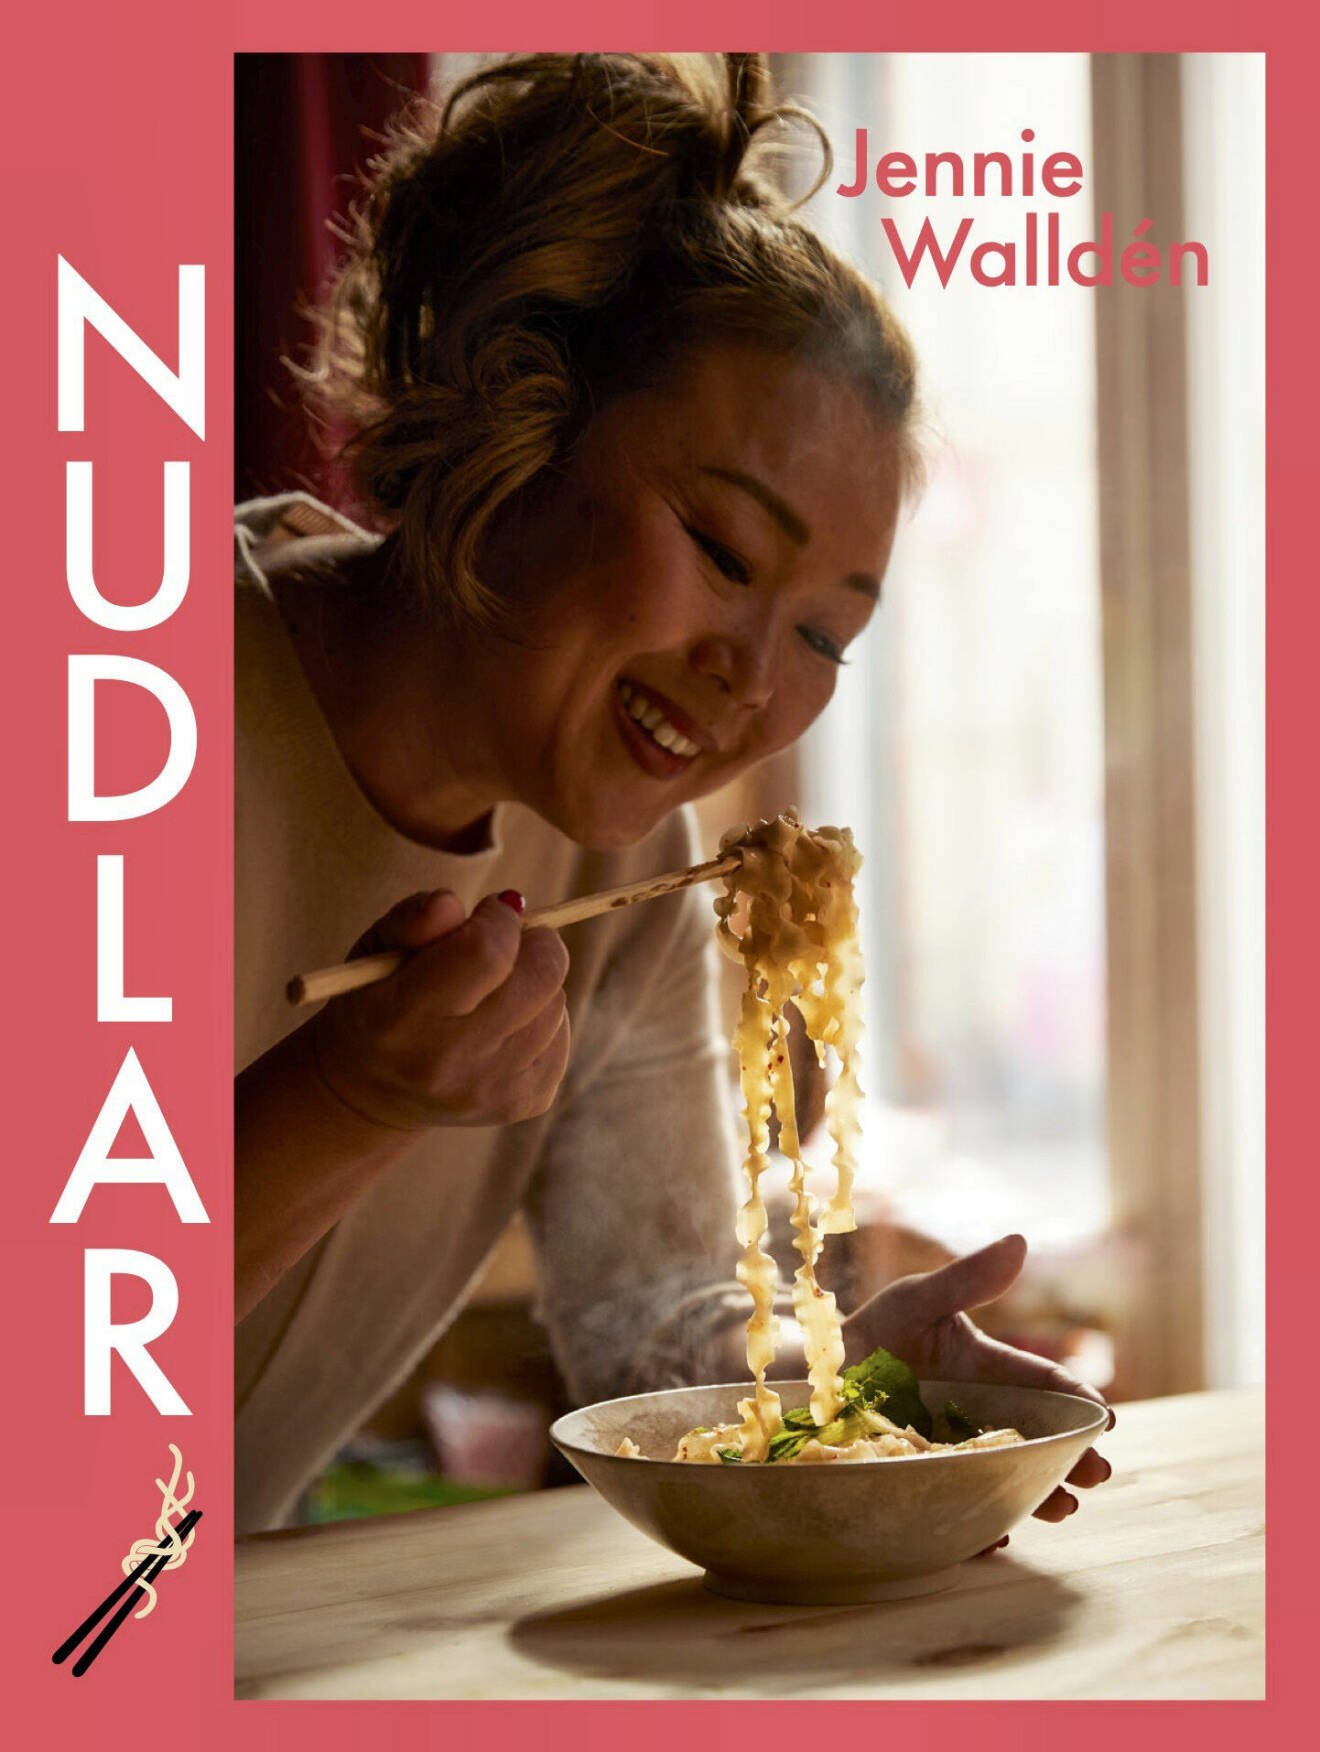 Jennie Walldén är aktuell med sin nya kokbok <i>Nudlar.</i>